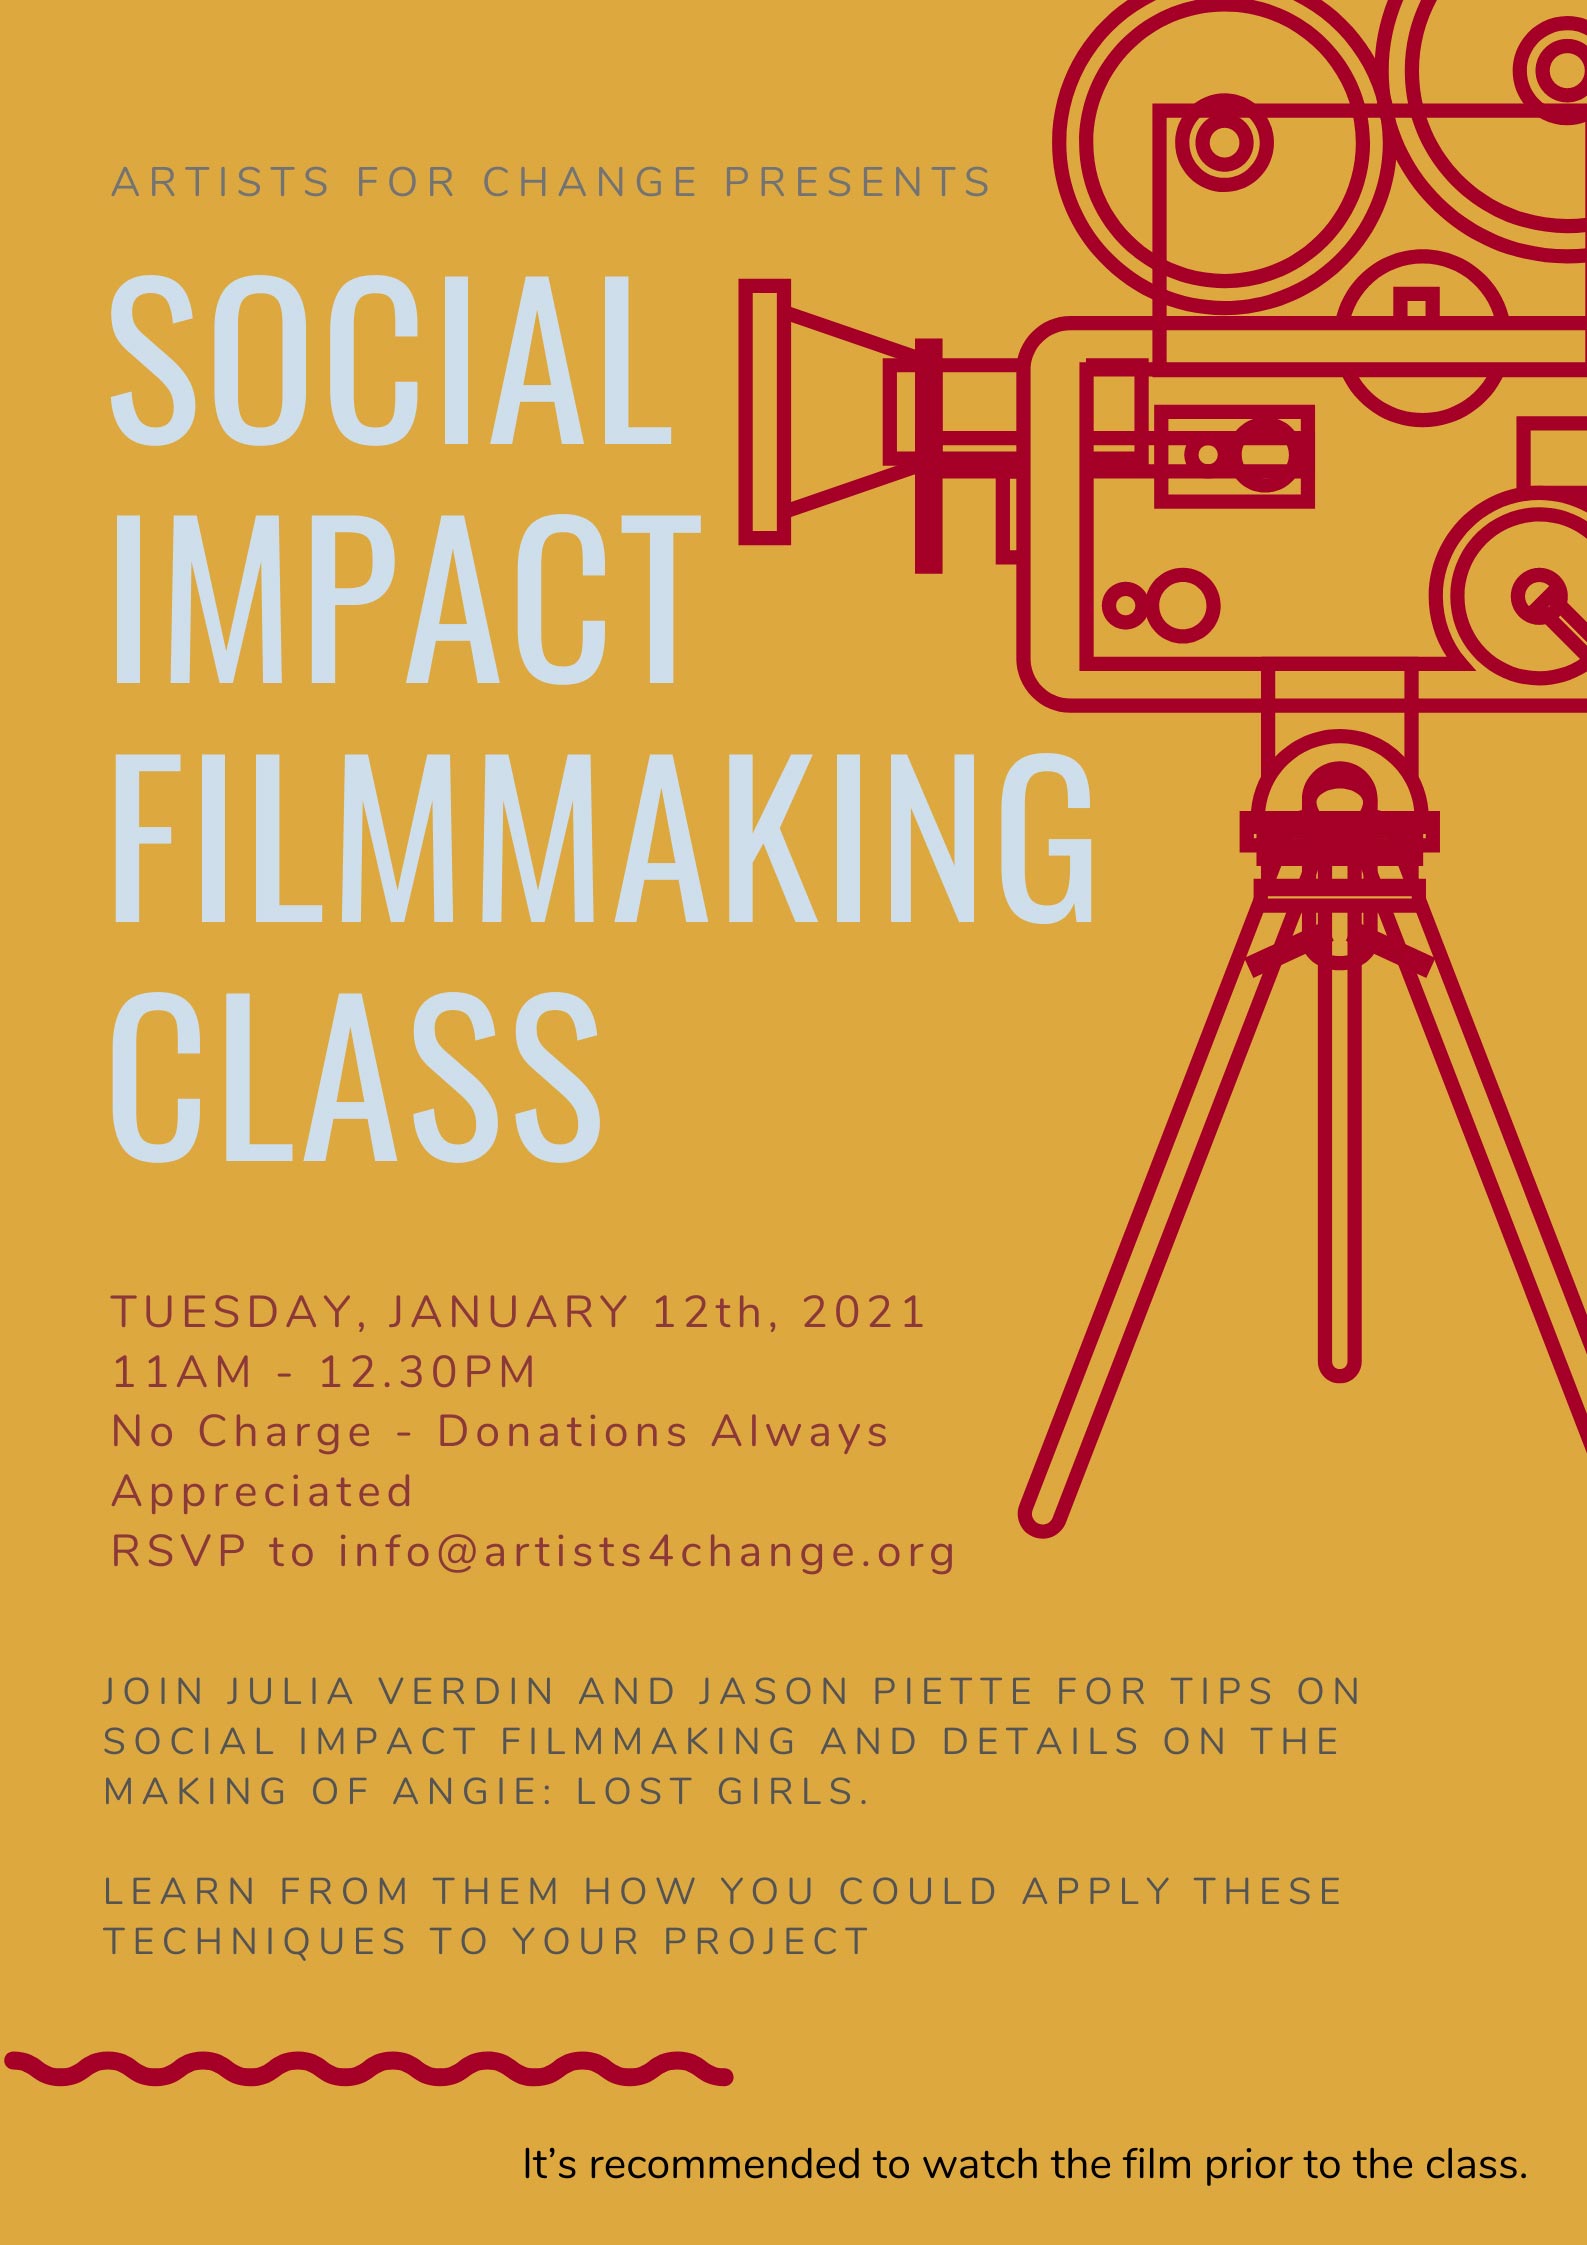 Social Impact filmmaking class